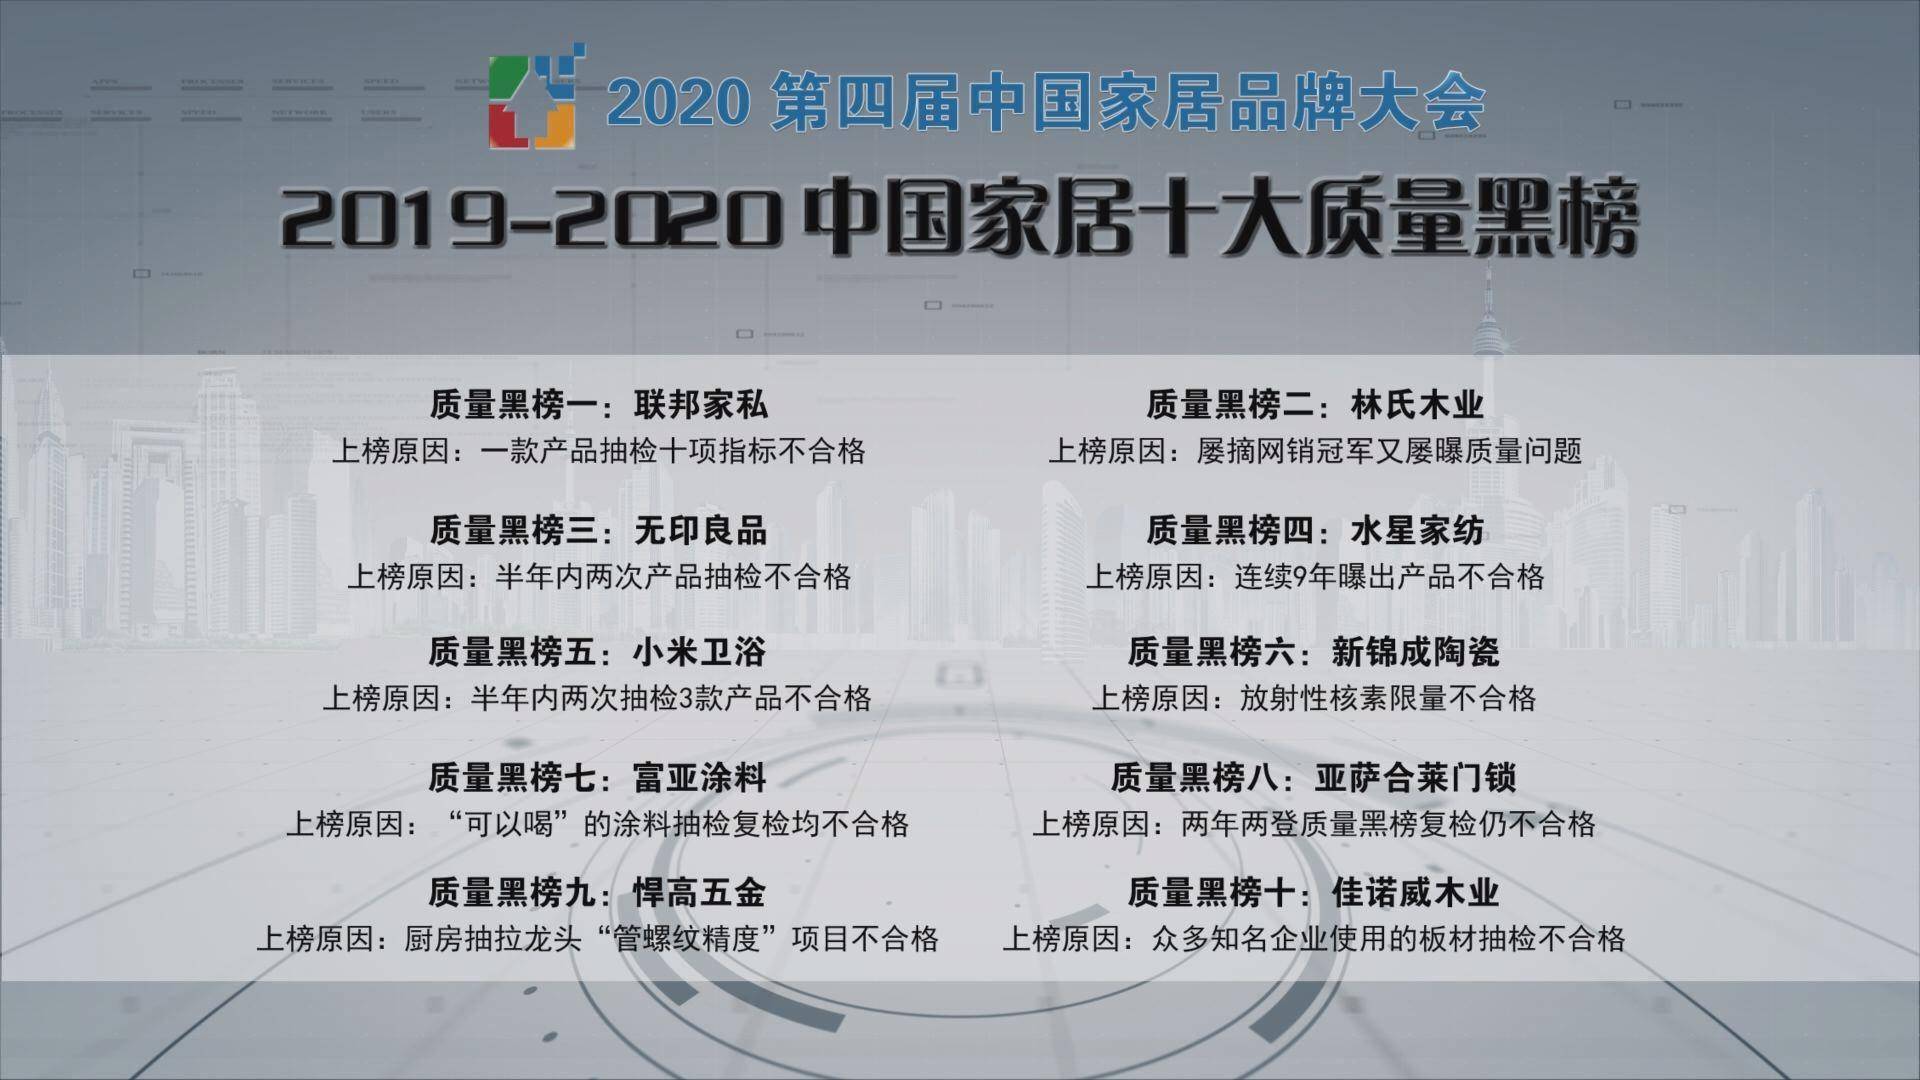 林氏木业上榜“2019-2020中国家居十大质量黑榜”(图2)